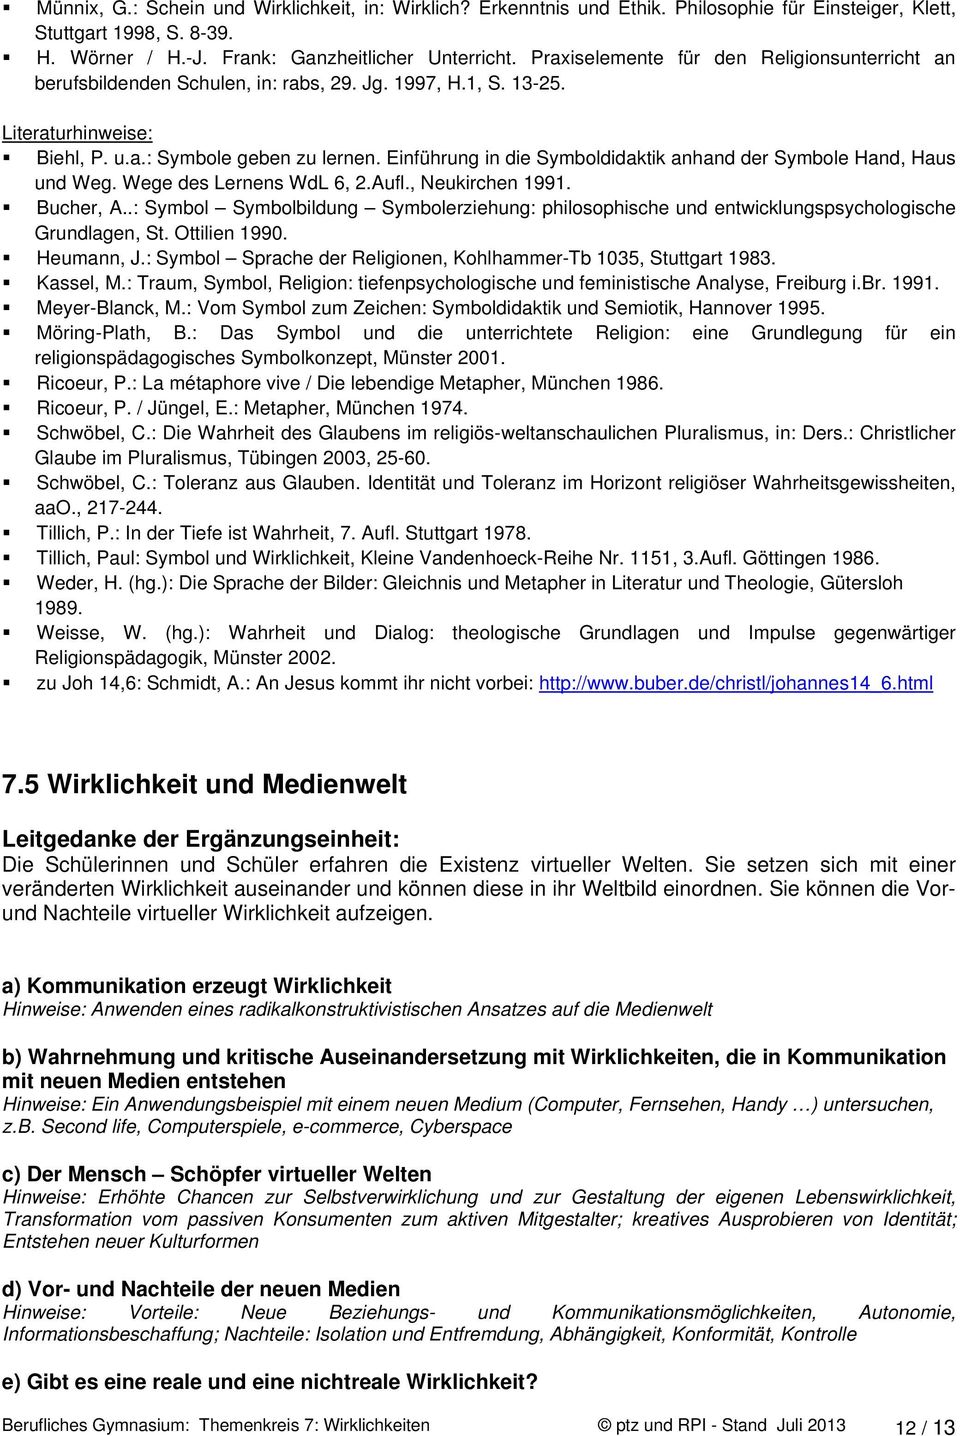 Einführung in die Symboldidaktik anhand der Symbole Hand, Haus und Weg. Wege des Lernens WdL 6, 2.Aufl., Neukirchen 1991. Bucher, A.